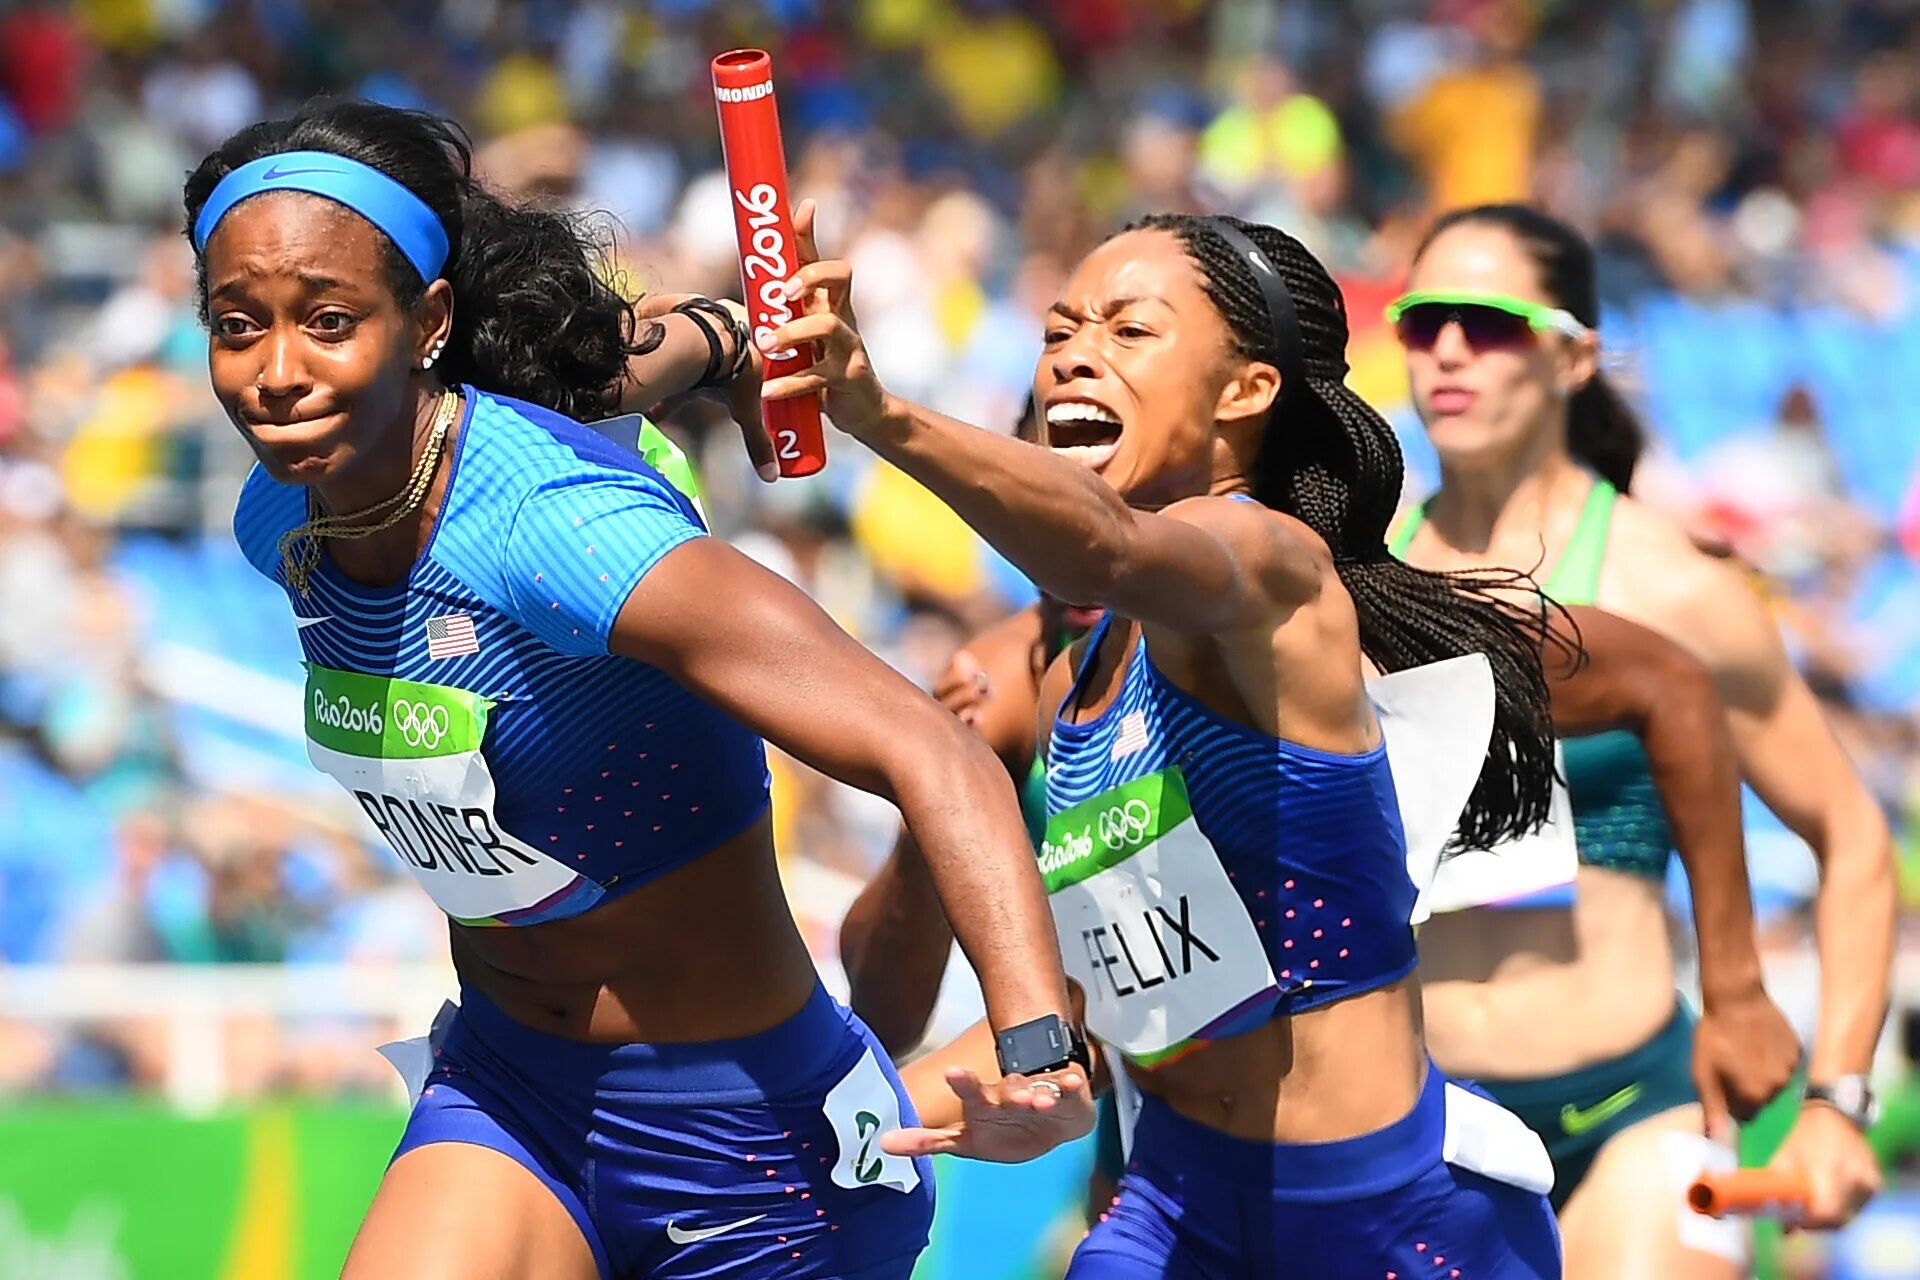 Эстафетные бегуны. Рио де Жанейро 2016 легкая атлетика. Эстафетный бег (4×100 метров, 4×400 метров). Эстафетный бег. Эстафетный бег в легкой атлетике.